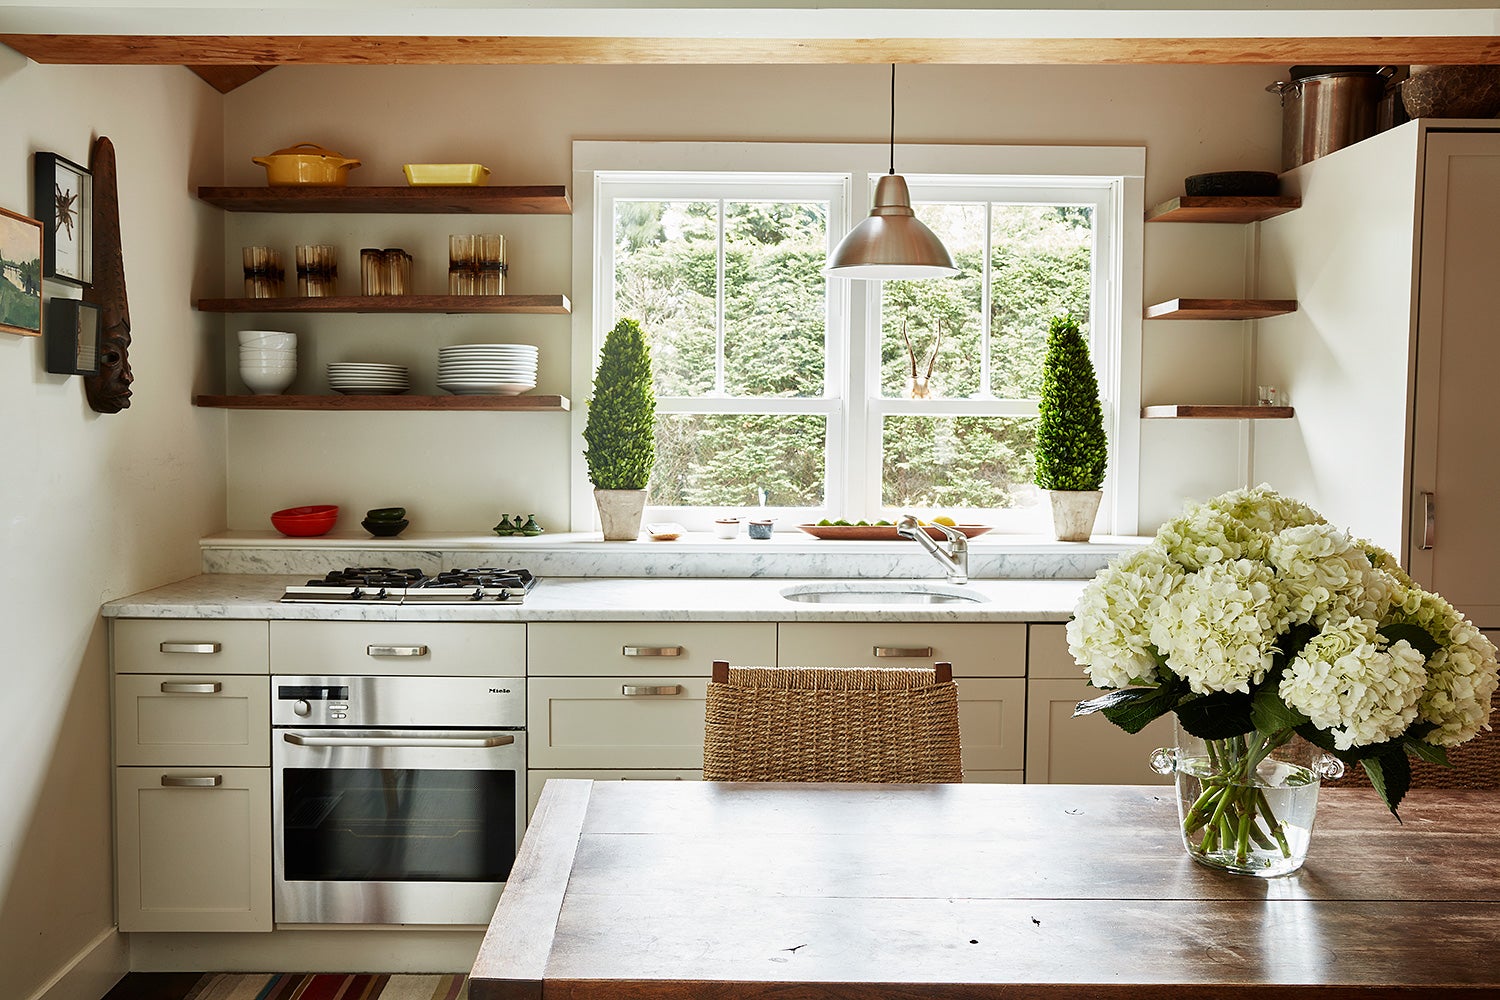 Kitchen by Fearins | Welch Interior Design on 1stdibs